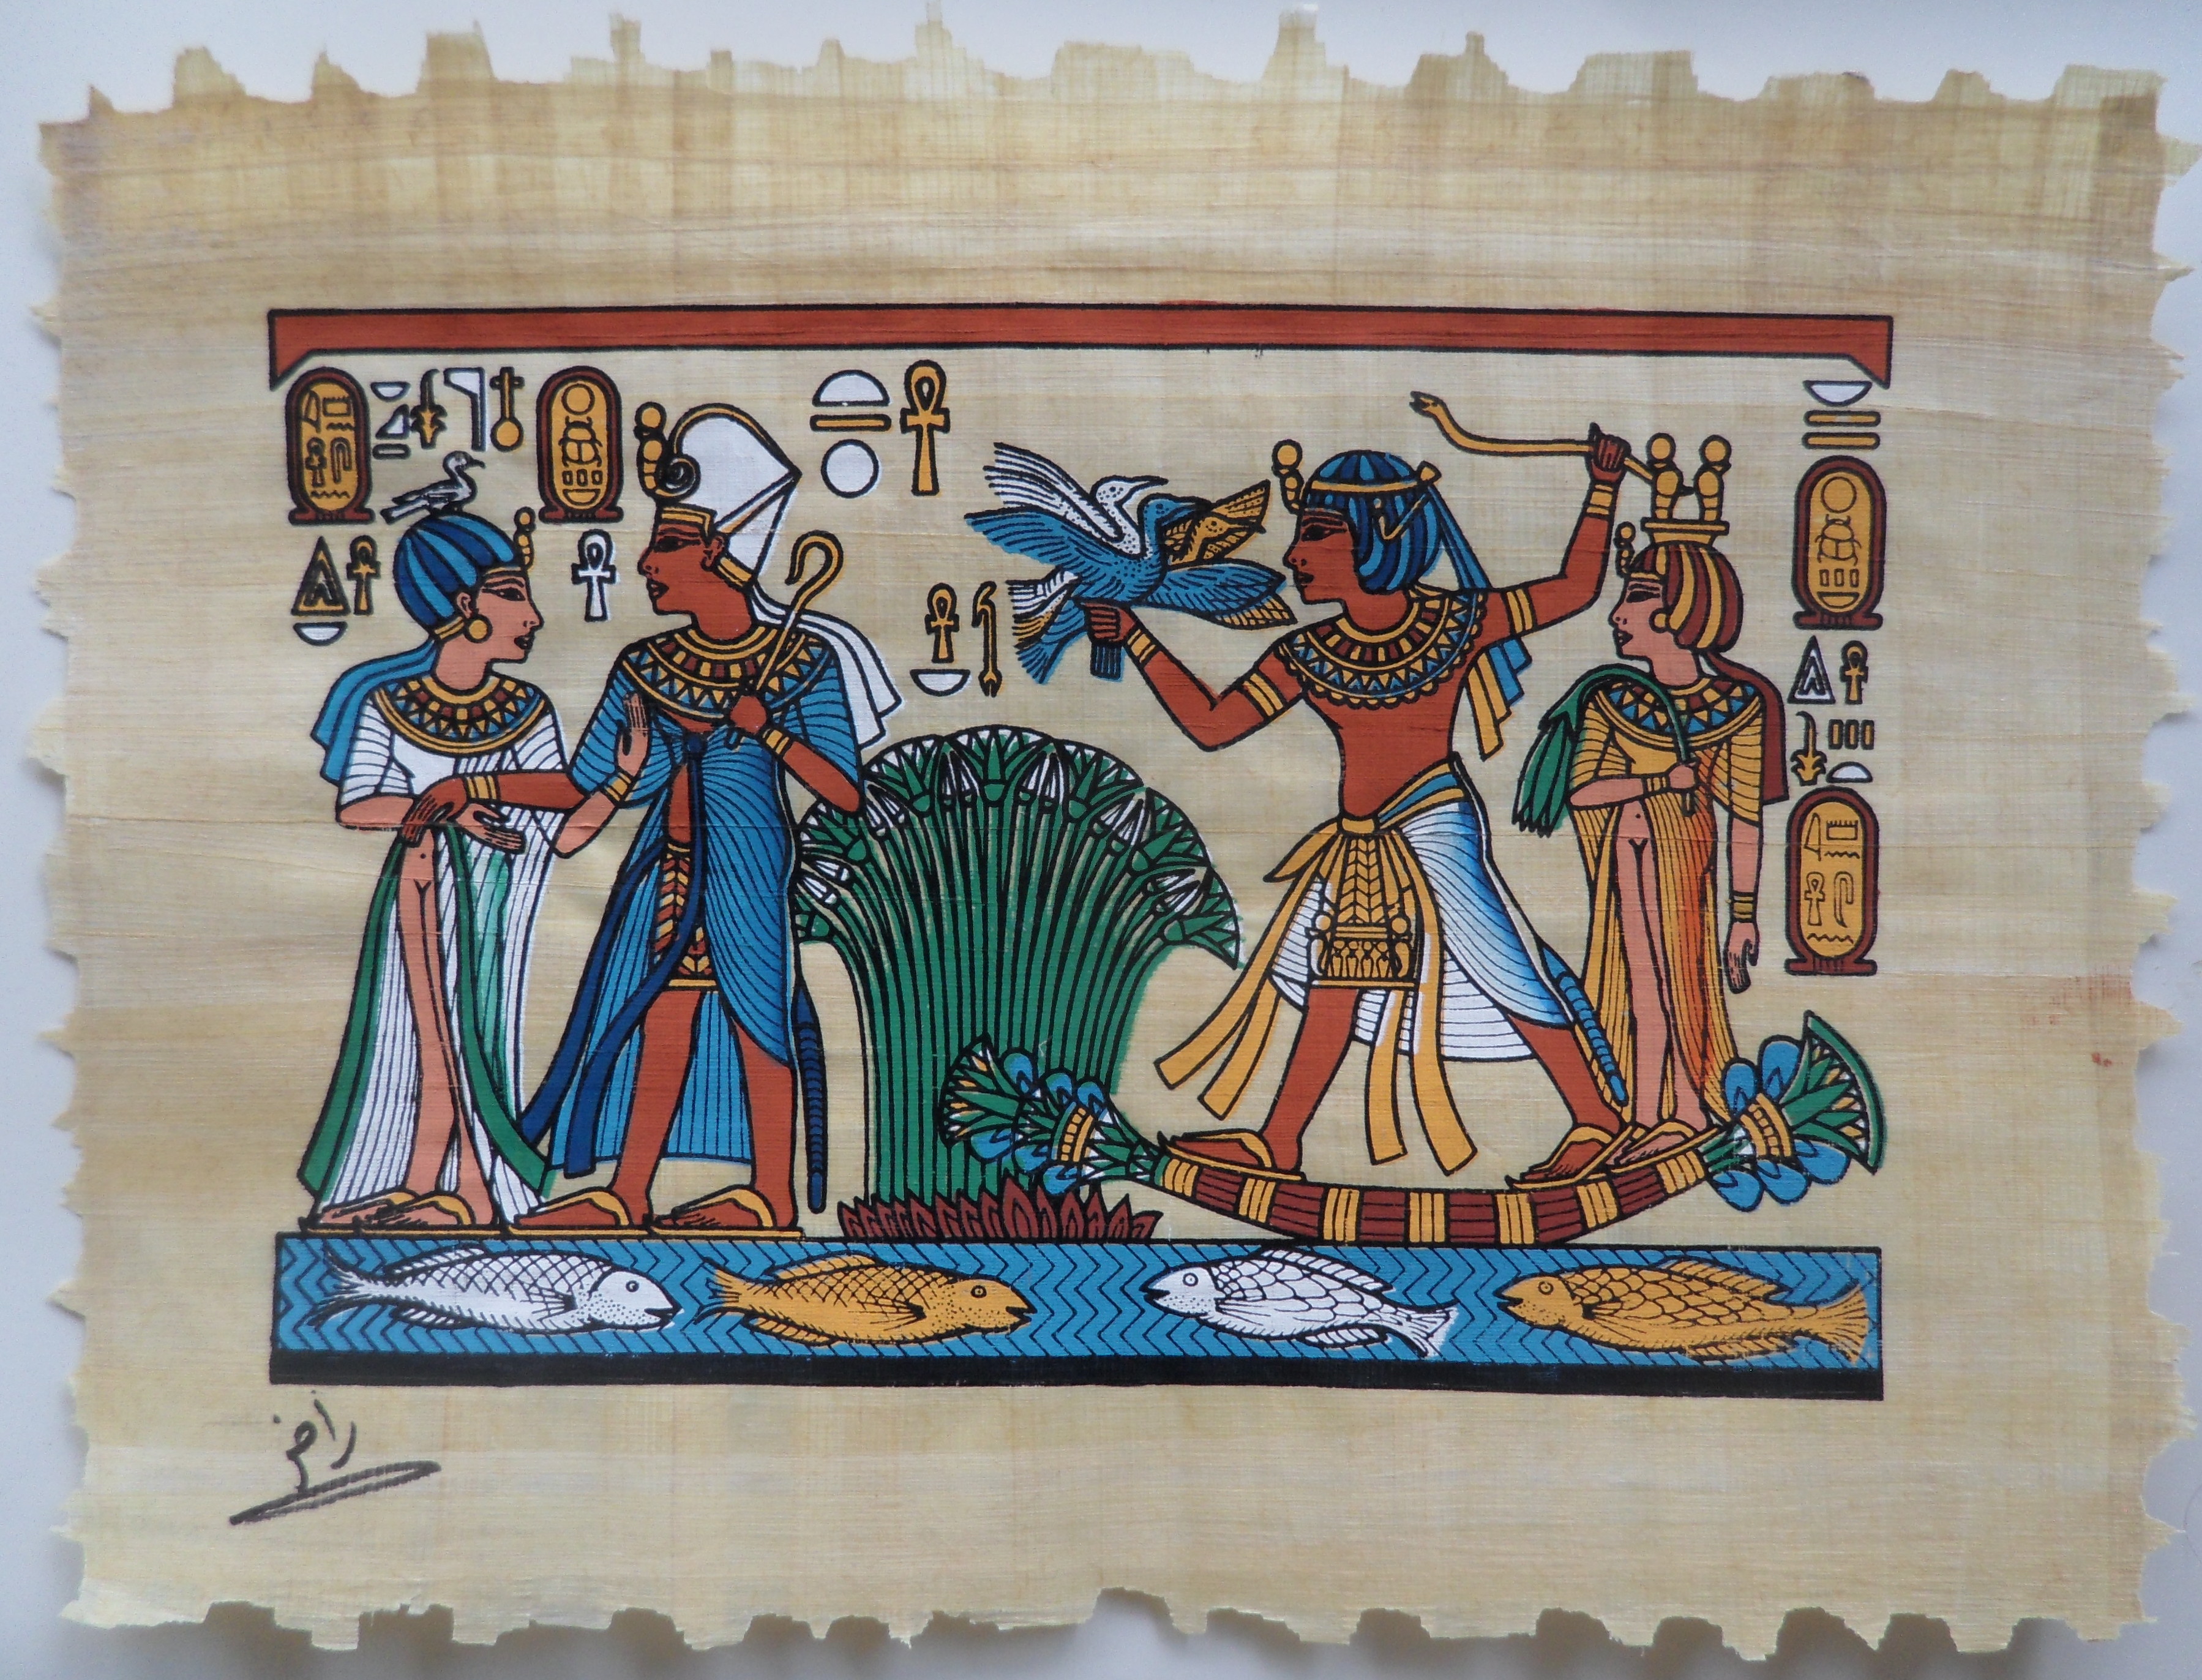 papyrus reed samll book